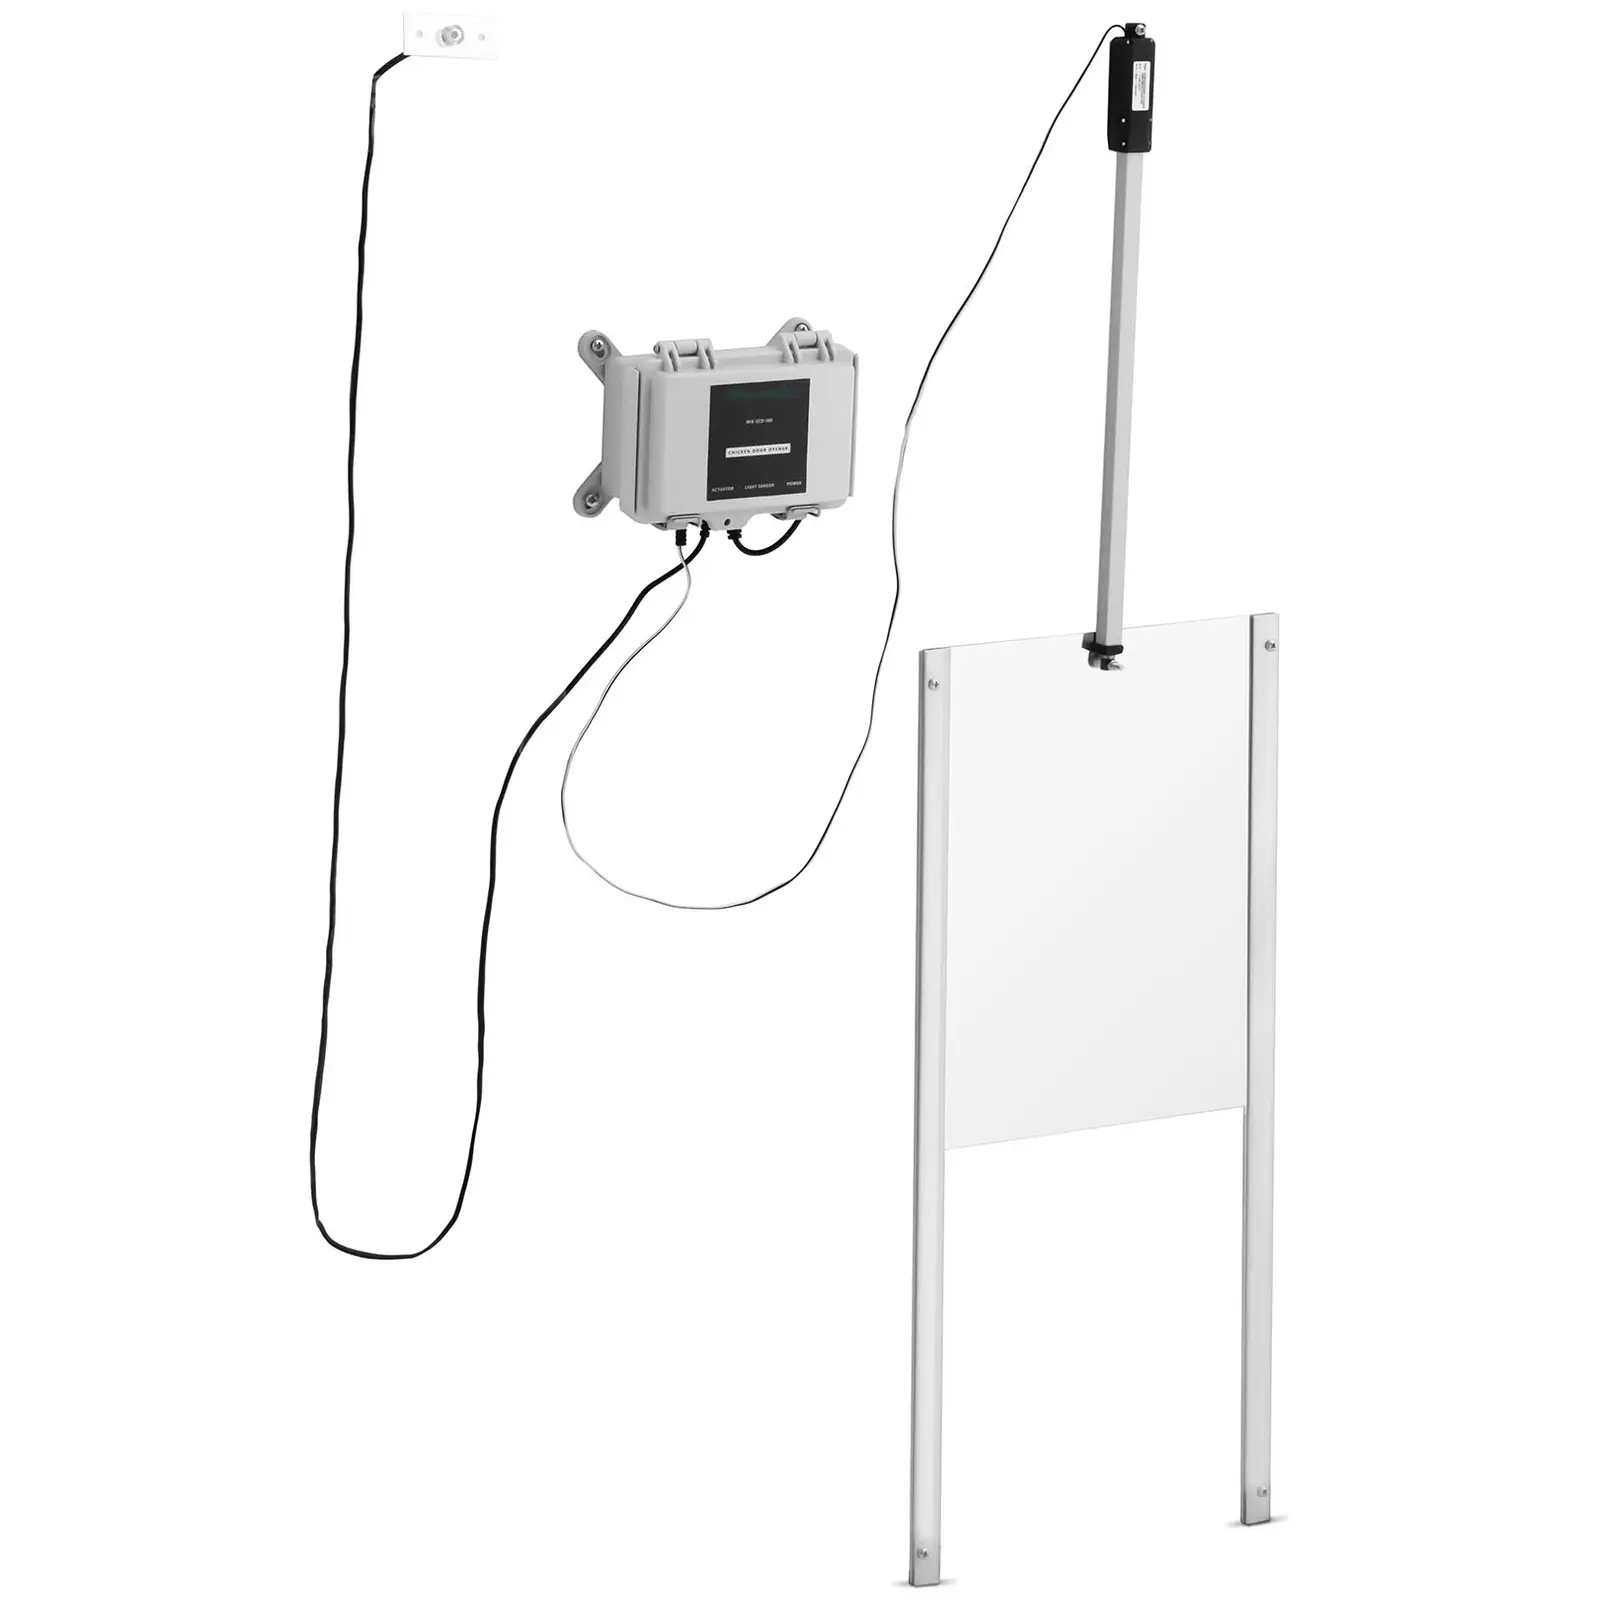 Automata tyúkól ajtó - időzítő / fényérzékelő - tápegység - vízálló ház - blokkolásgátló funkció | Wiesenfield